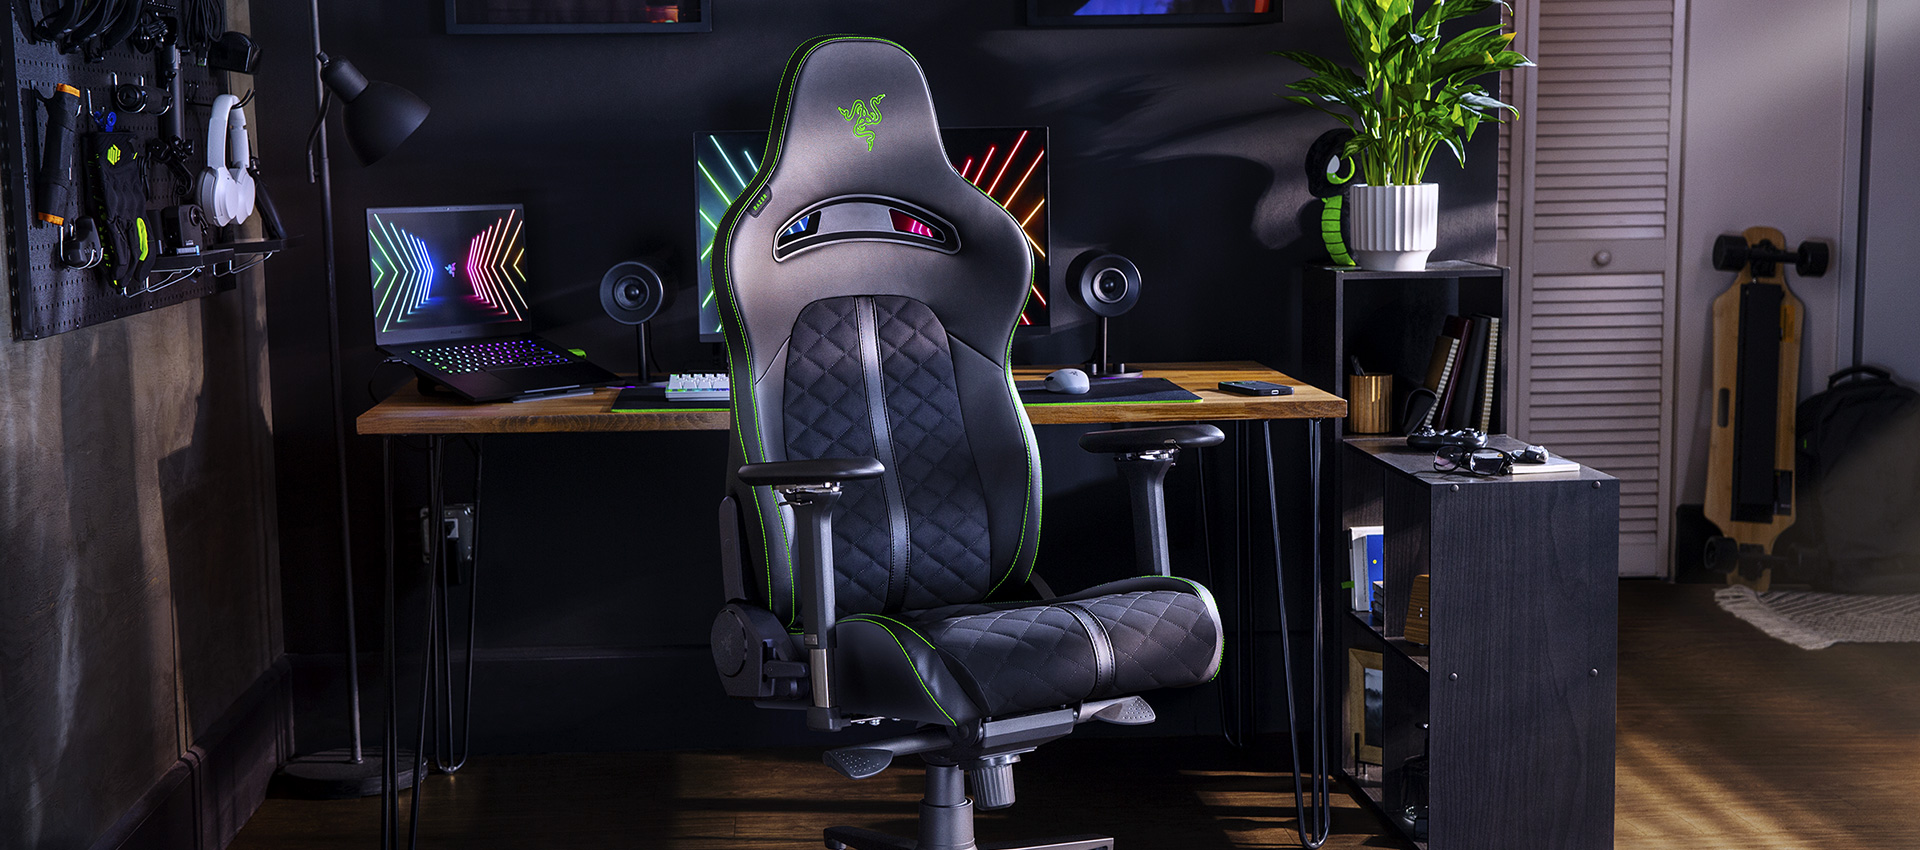 Fue aquí donde la razer compartió nueva información sobre la silla de juego Enki, así como los auriculares para juegos Kraken V3.